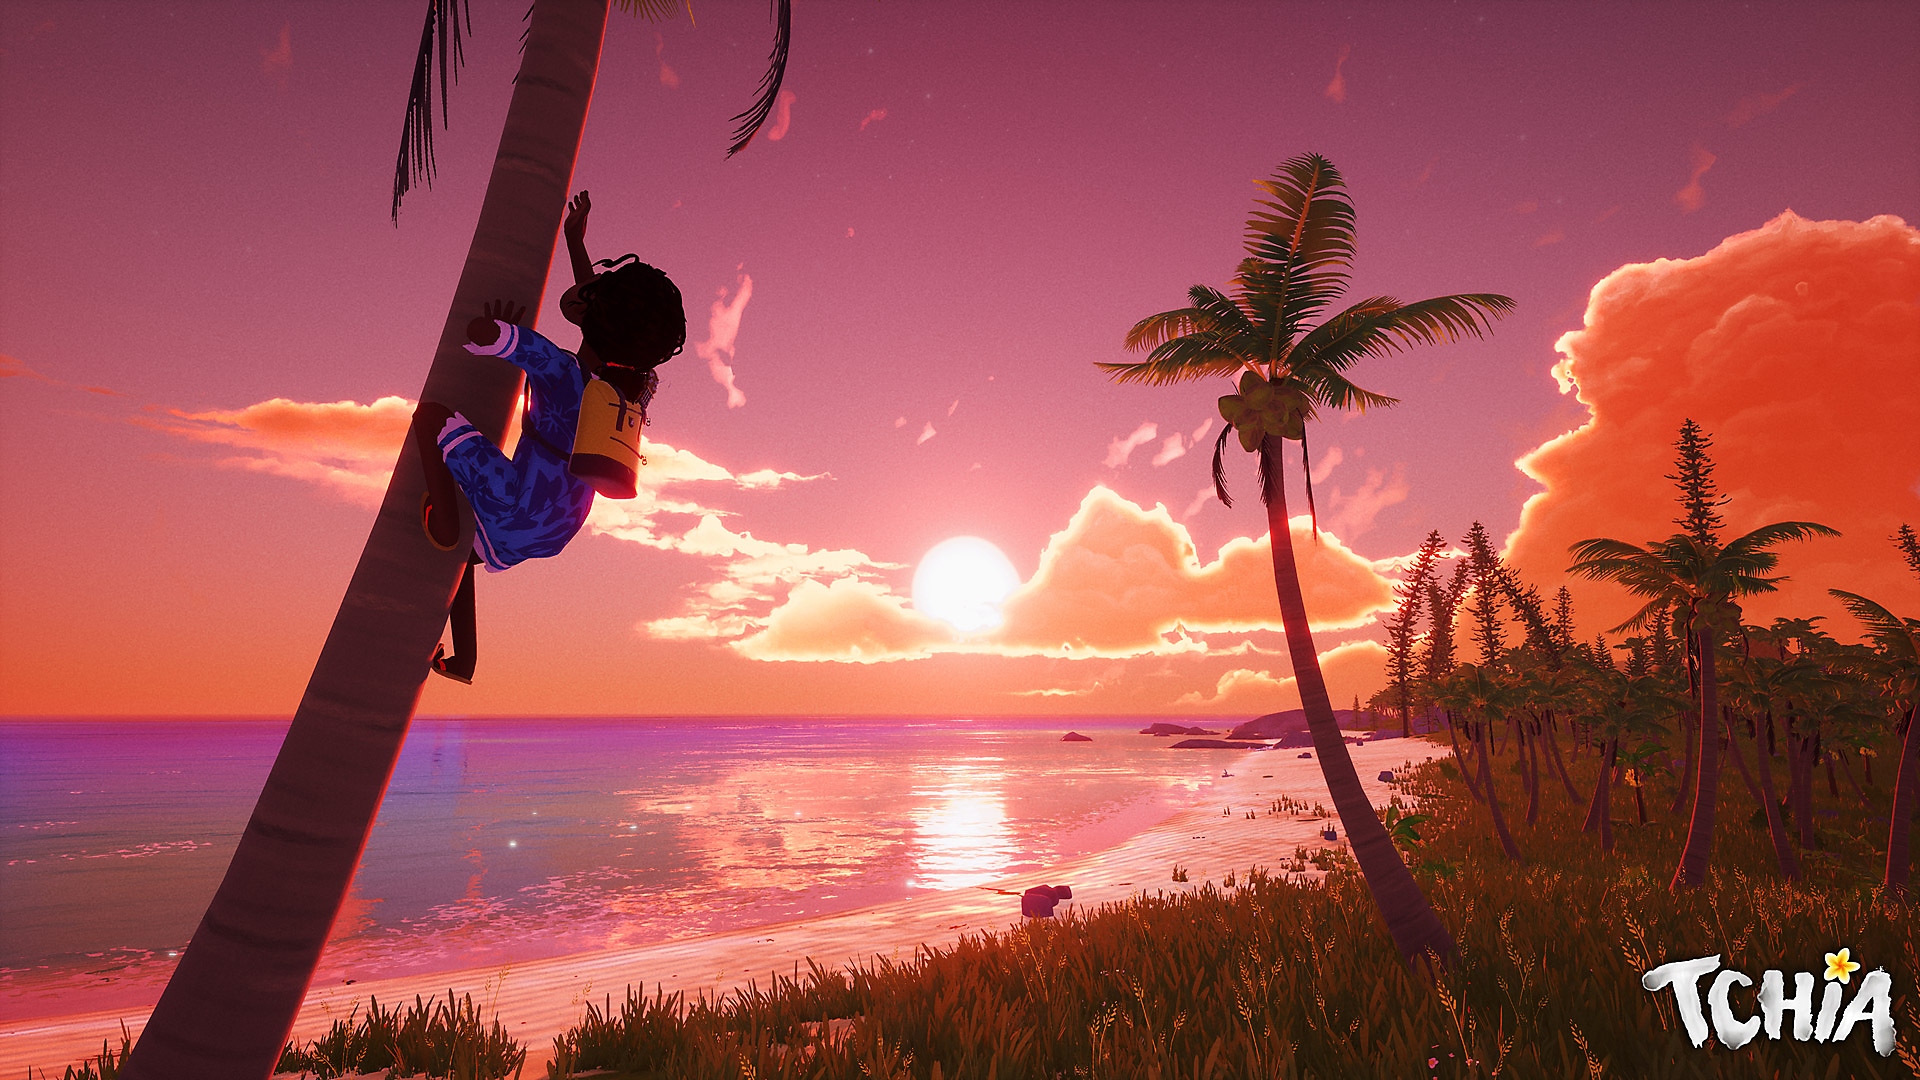 Captura de pantalla de Tchia que muestra al personaje principal trepando un árbol con una hermosa puesta de sol a lo lejos